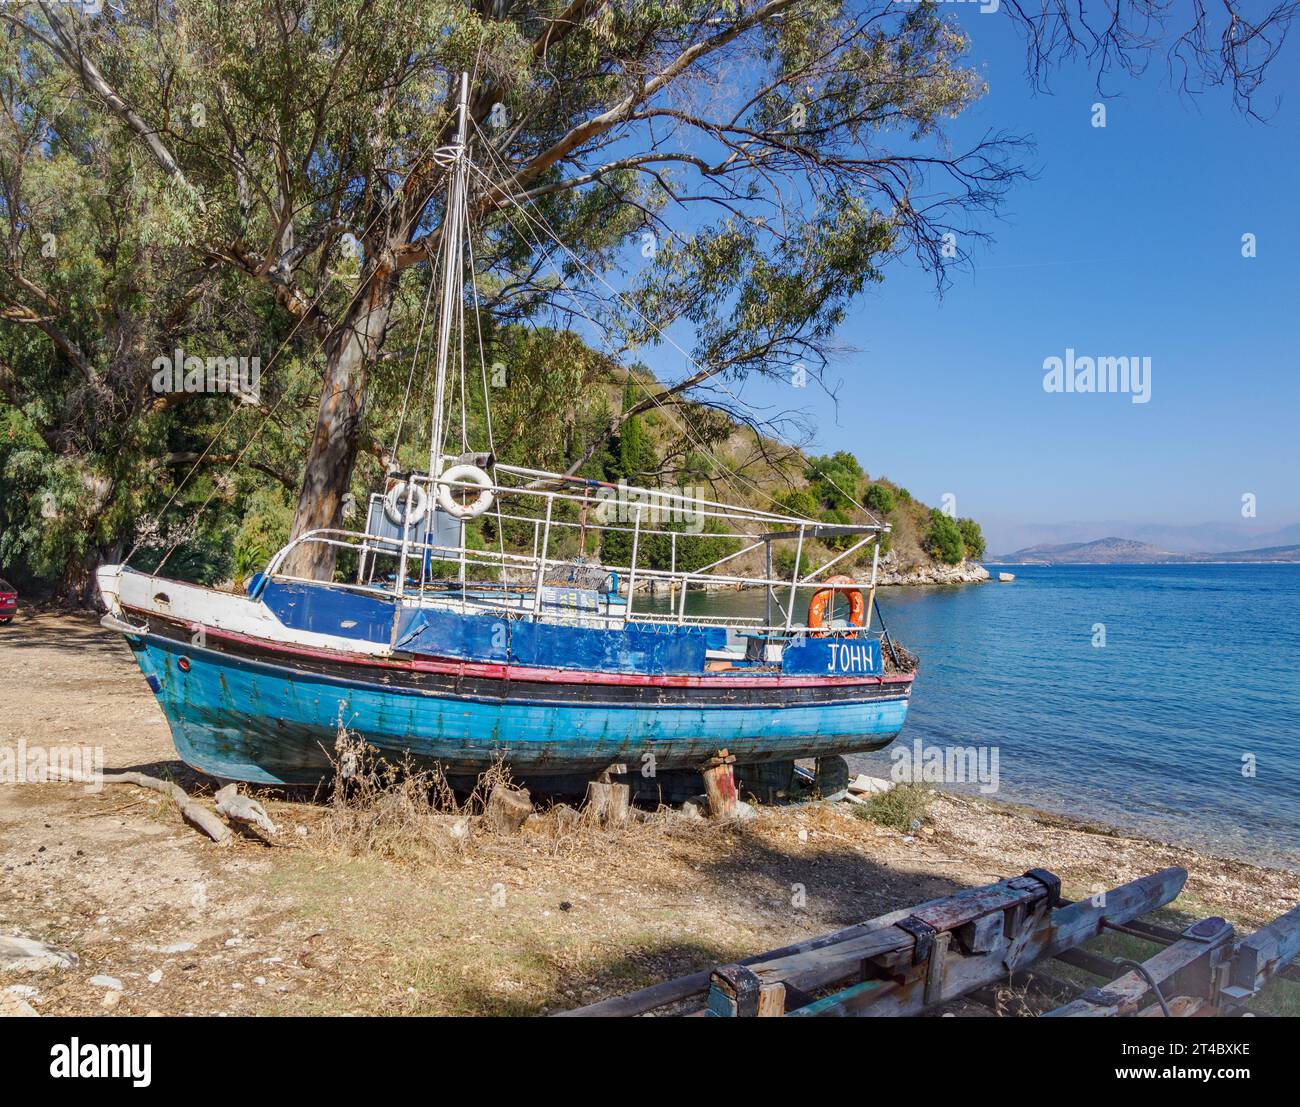 Strandboot The John at Chouchoulio Beach, eine ruhige Bucht an der Nordostküste von Korfu auf den Ionischen Inseln Griechenlands Stockfoto